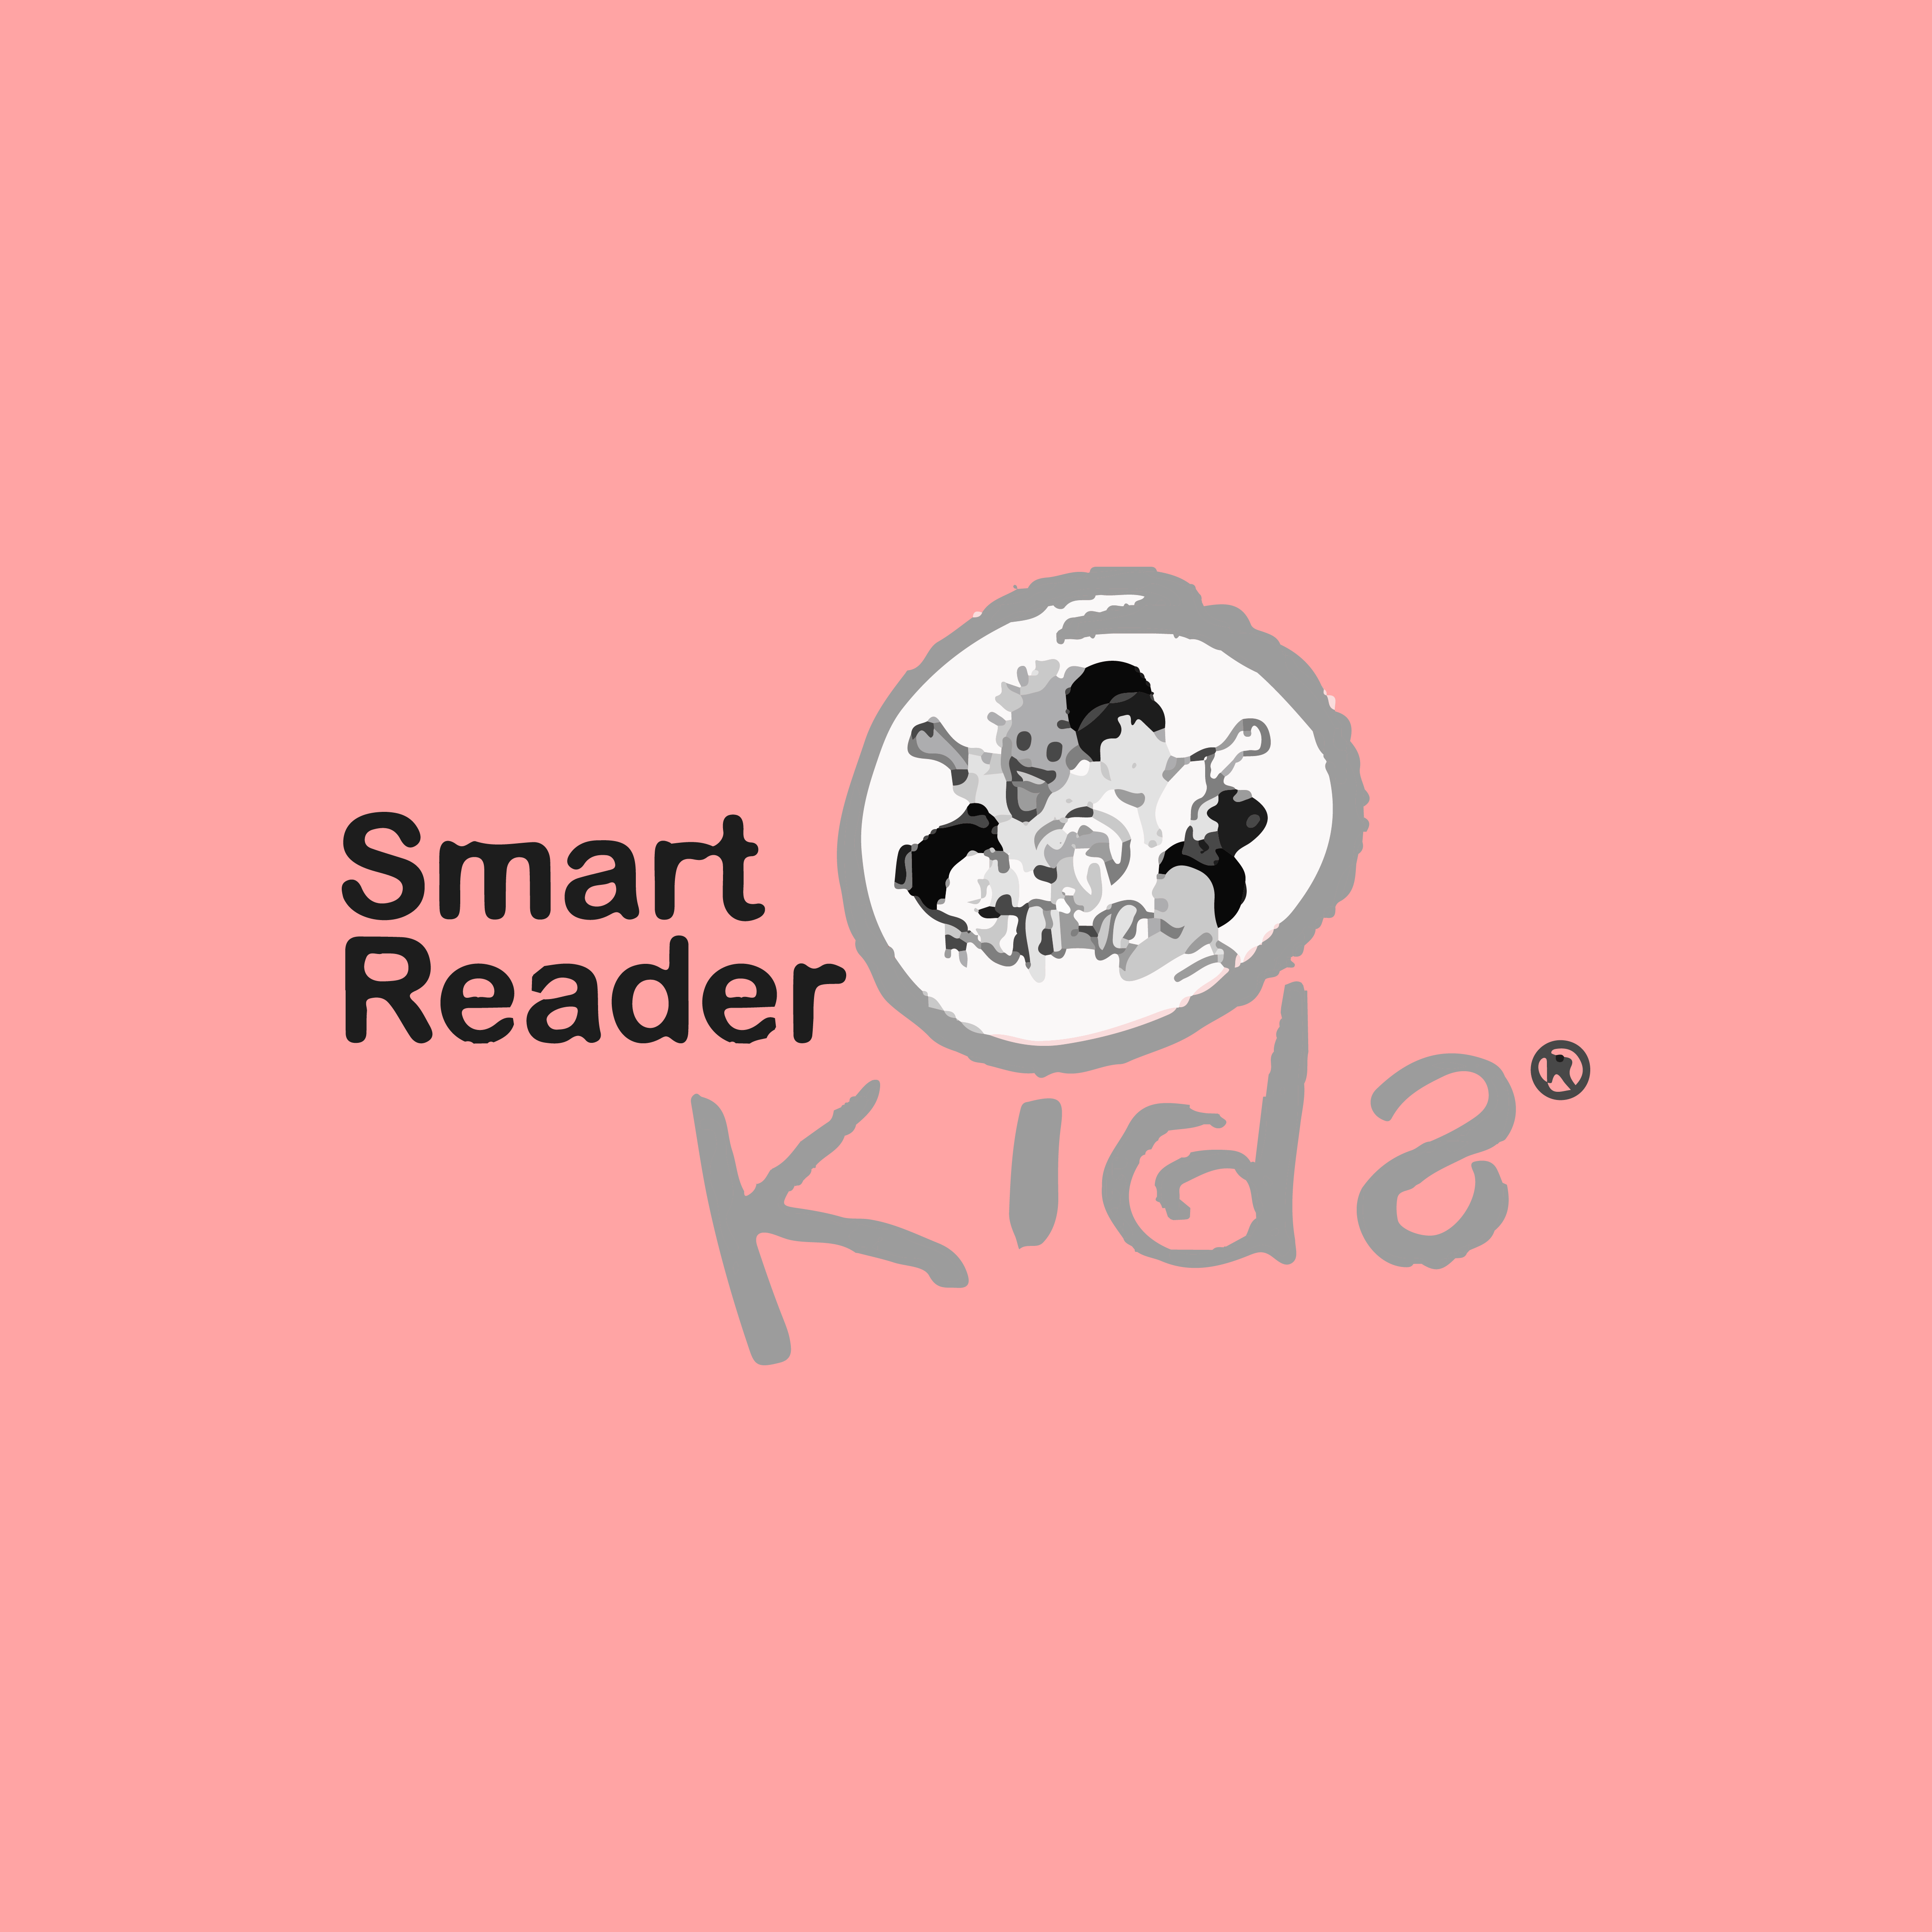 Image: Smart Reader Kids